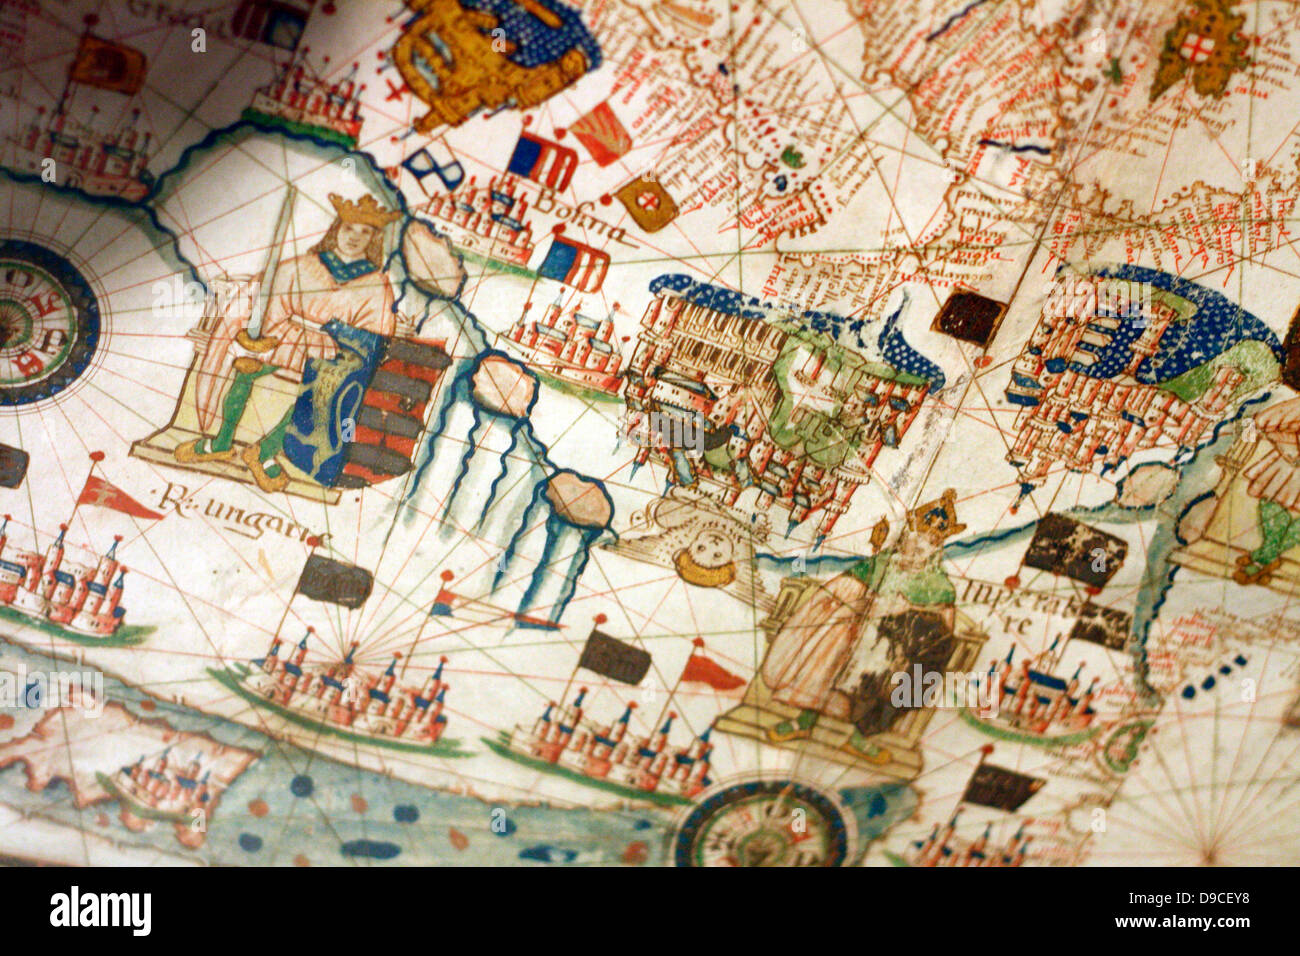 Süden (Oben) Blick auf eine Navigationshilfe, Karte von Europa und dem Nahen Osten von Jacopo Russo 1528, Messina. Sizilien. Übersicht Schweiz, Italien, Balkan und Ungarn Stockfoto